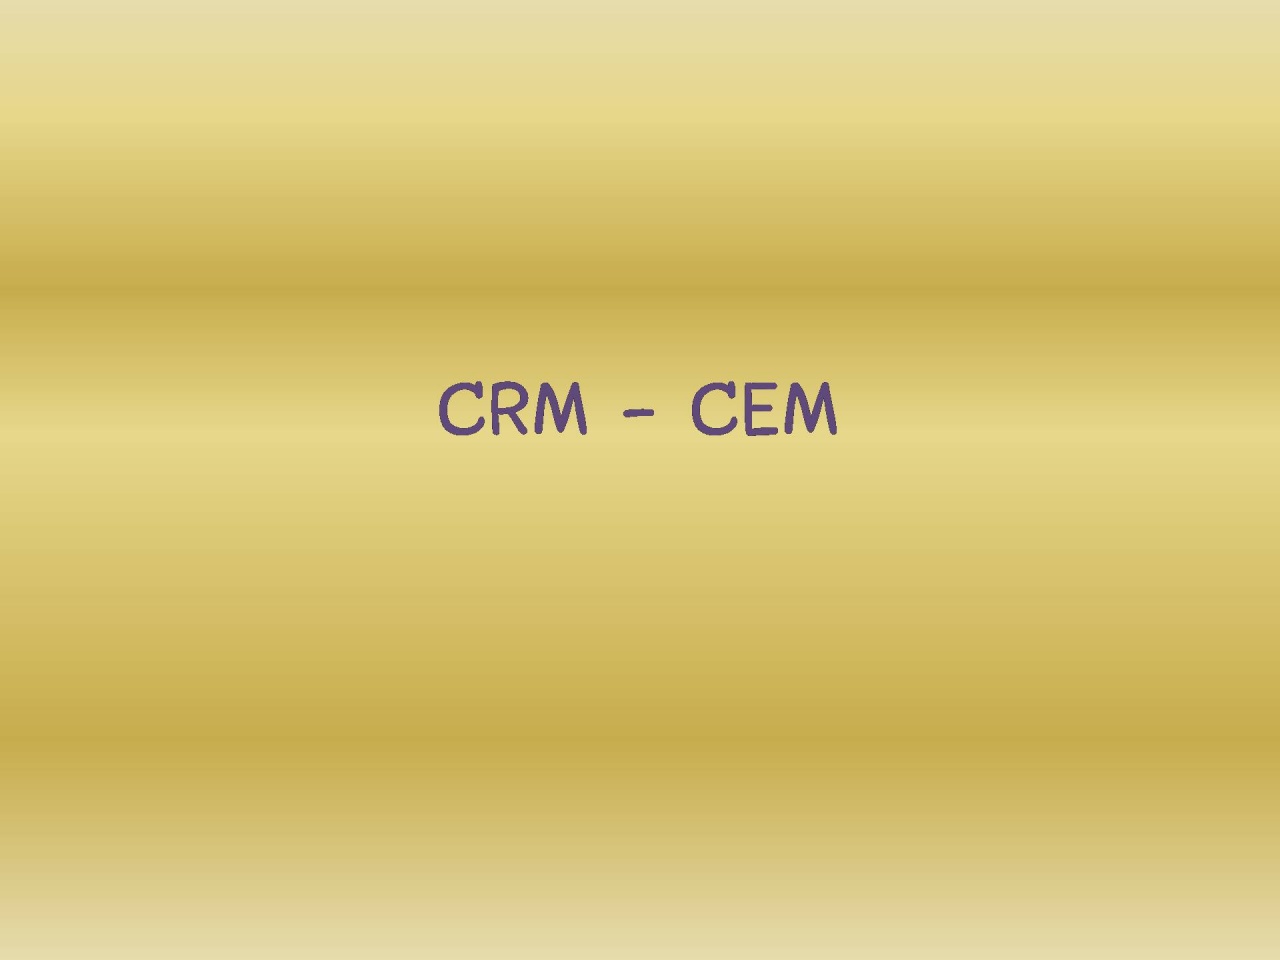 การบริหารความสัมพันธ์และสร้างประสบการณ์ที่ดีให้กับลูกค้า CRM-CEM